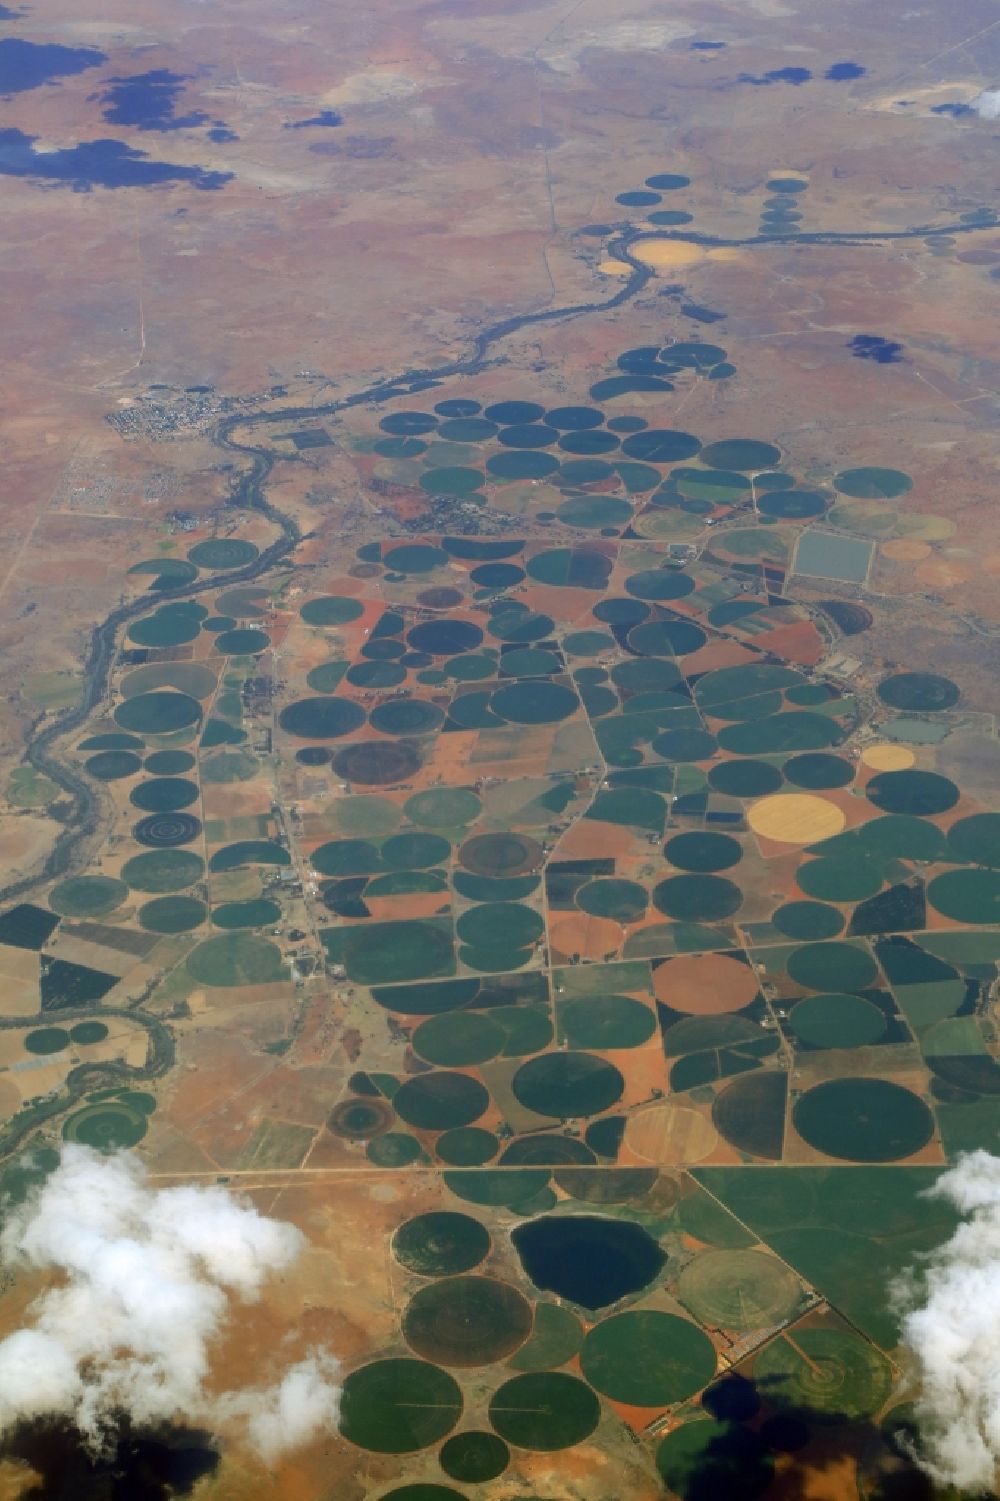 Jacobsdal aus der Vogelperspektive: Bewässerungsanlagen in der Agrarlandschaft an den Uferbereichen des Flusses Rietrivier in Jakobsdal in Freistaat, Südafrika